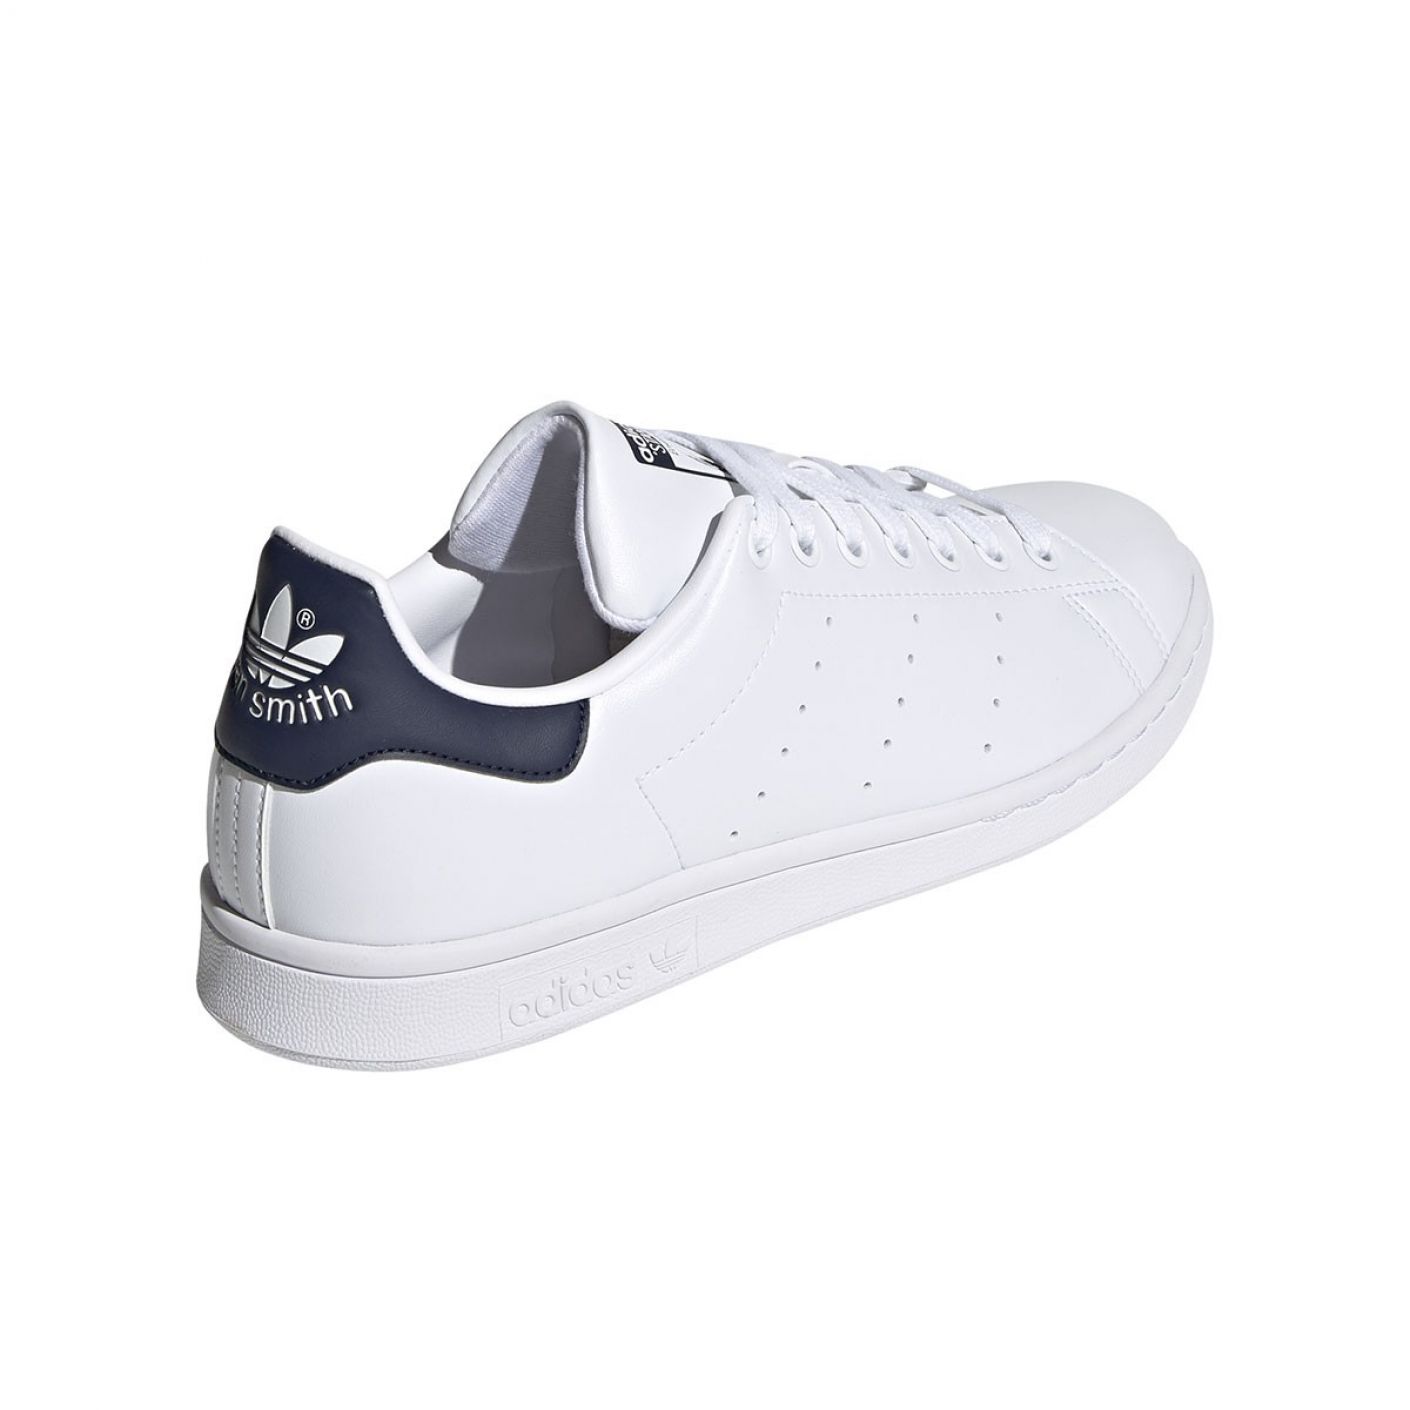 Adidas Stan Smith White Collegiate Navy